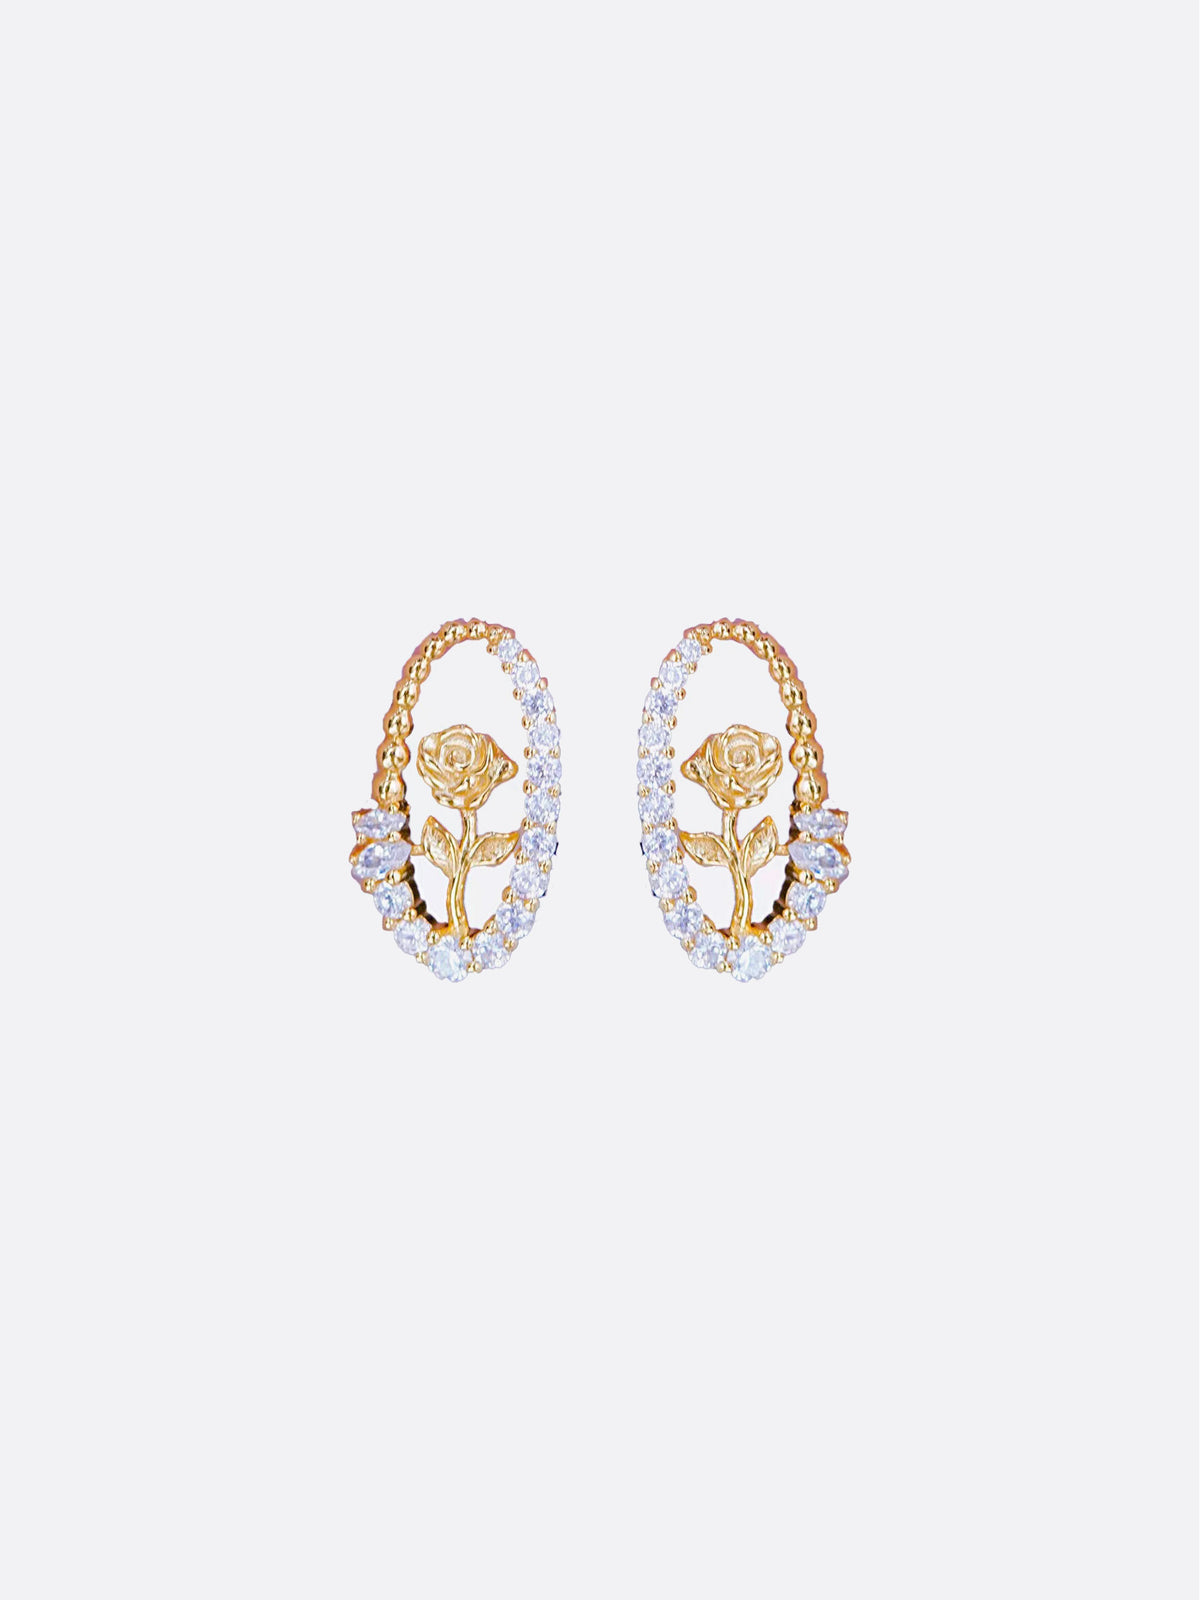 LAFIT · Rose Castle - Earrings 玫瑰花藝雕刻閃鑽款耳環